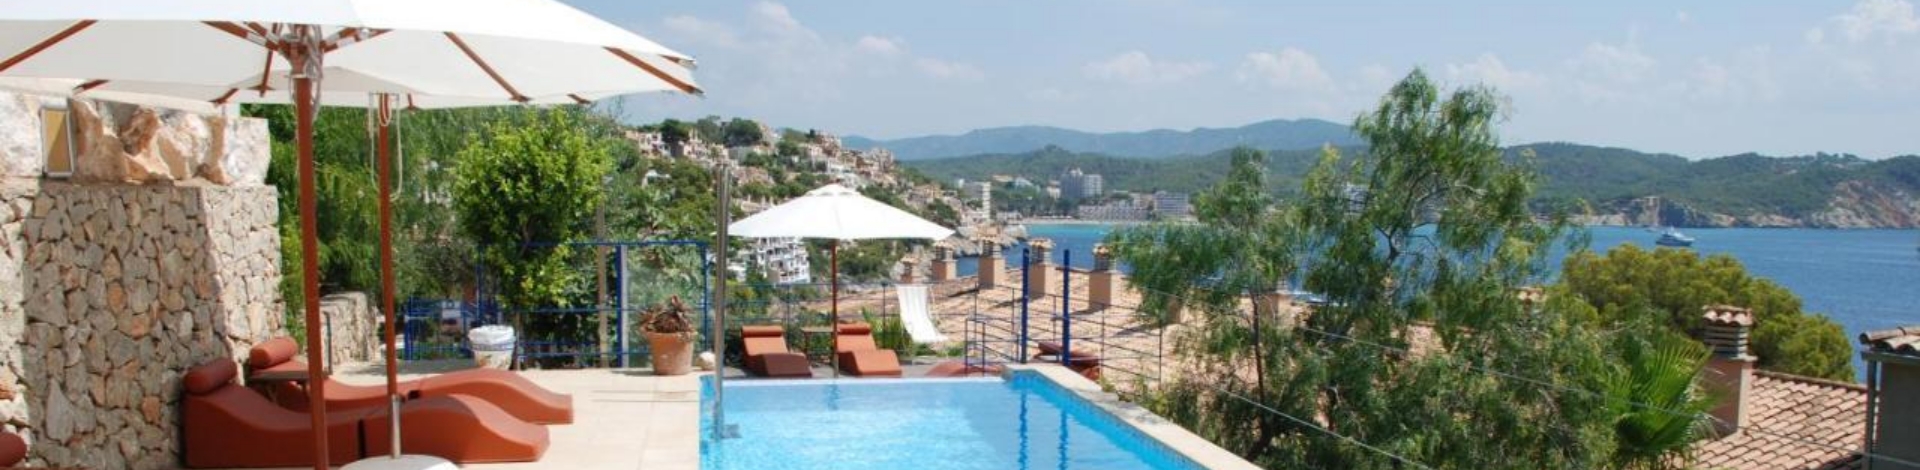 Blick über die Bucht aus dem Hotel Petit Cala Fornell auf Mallorca